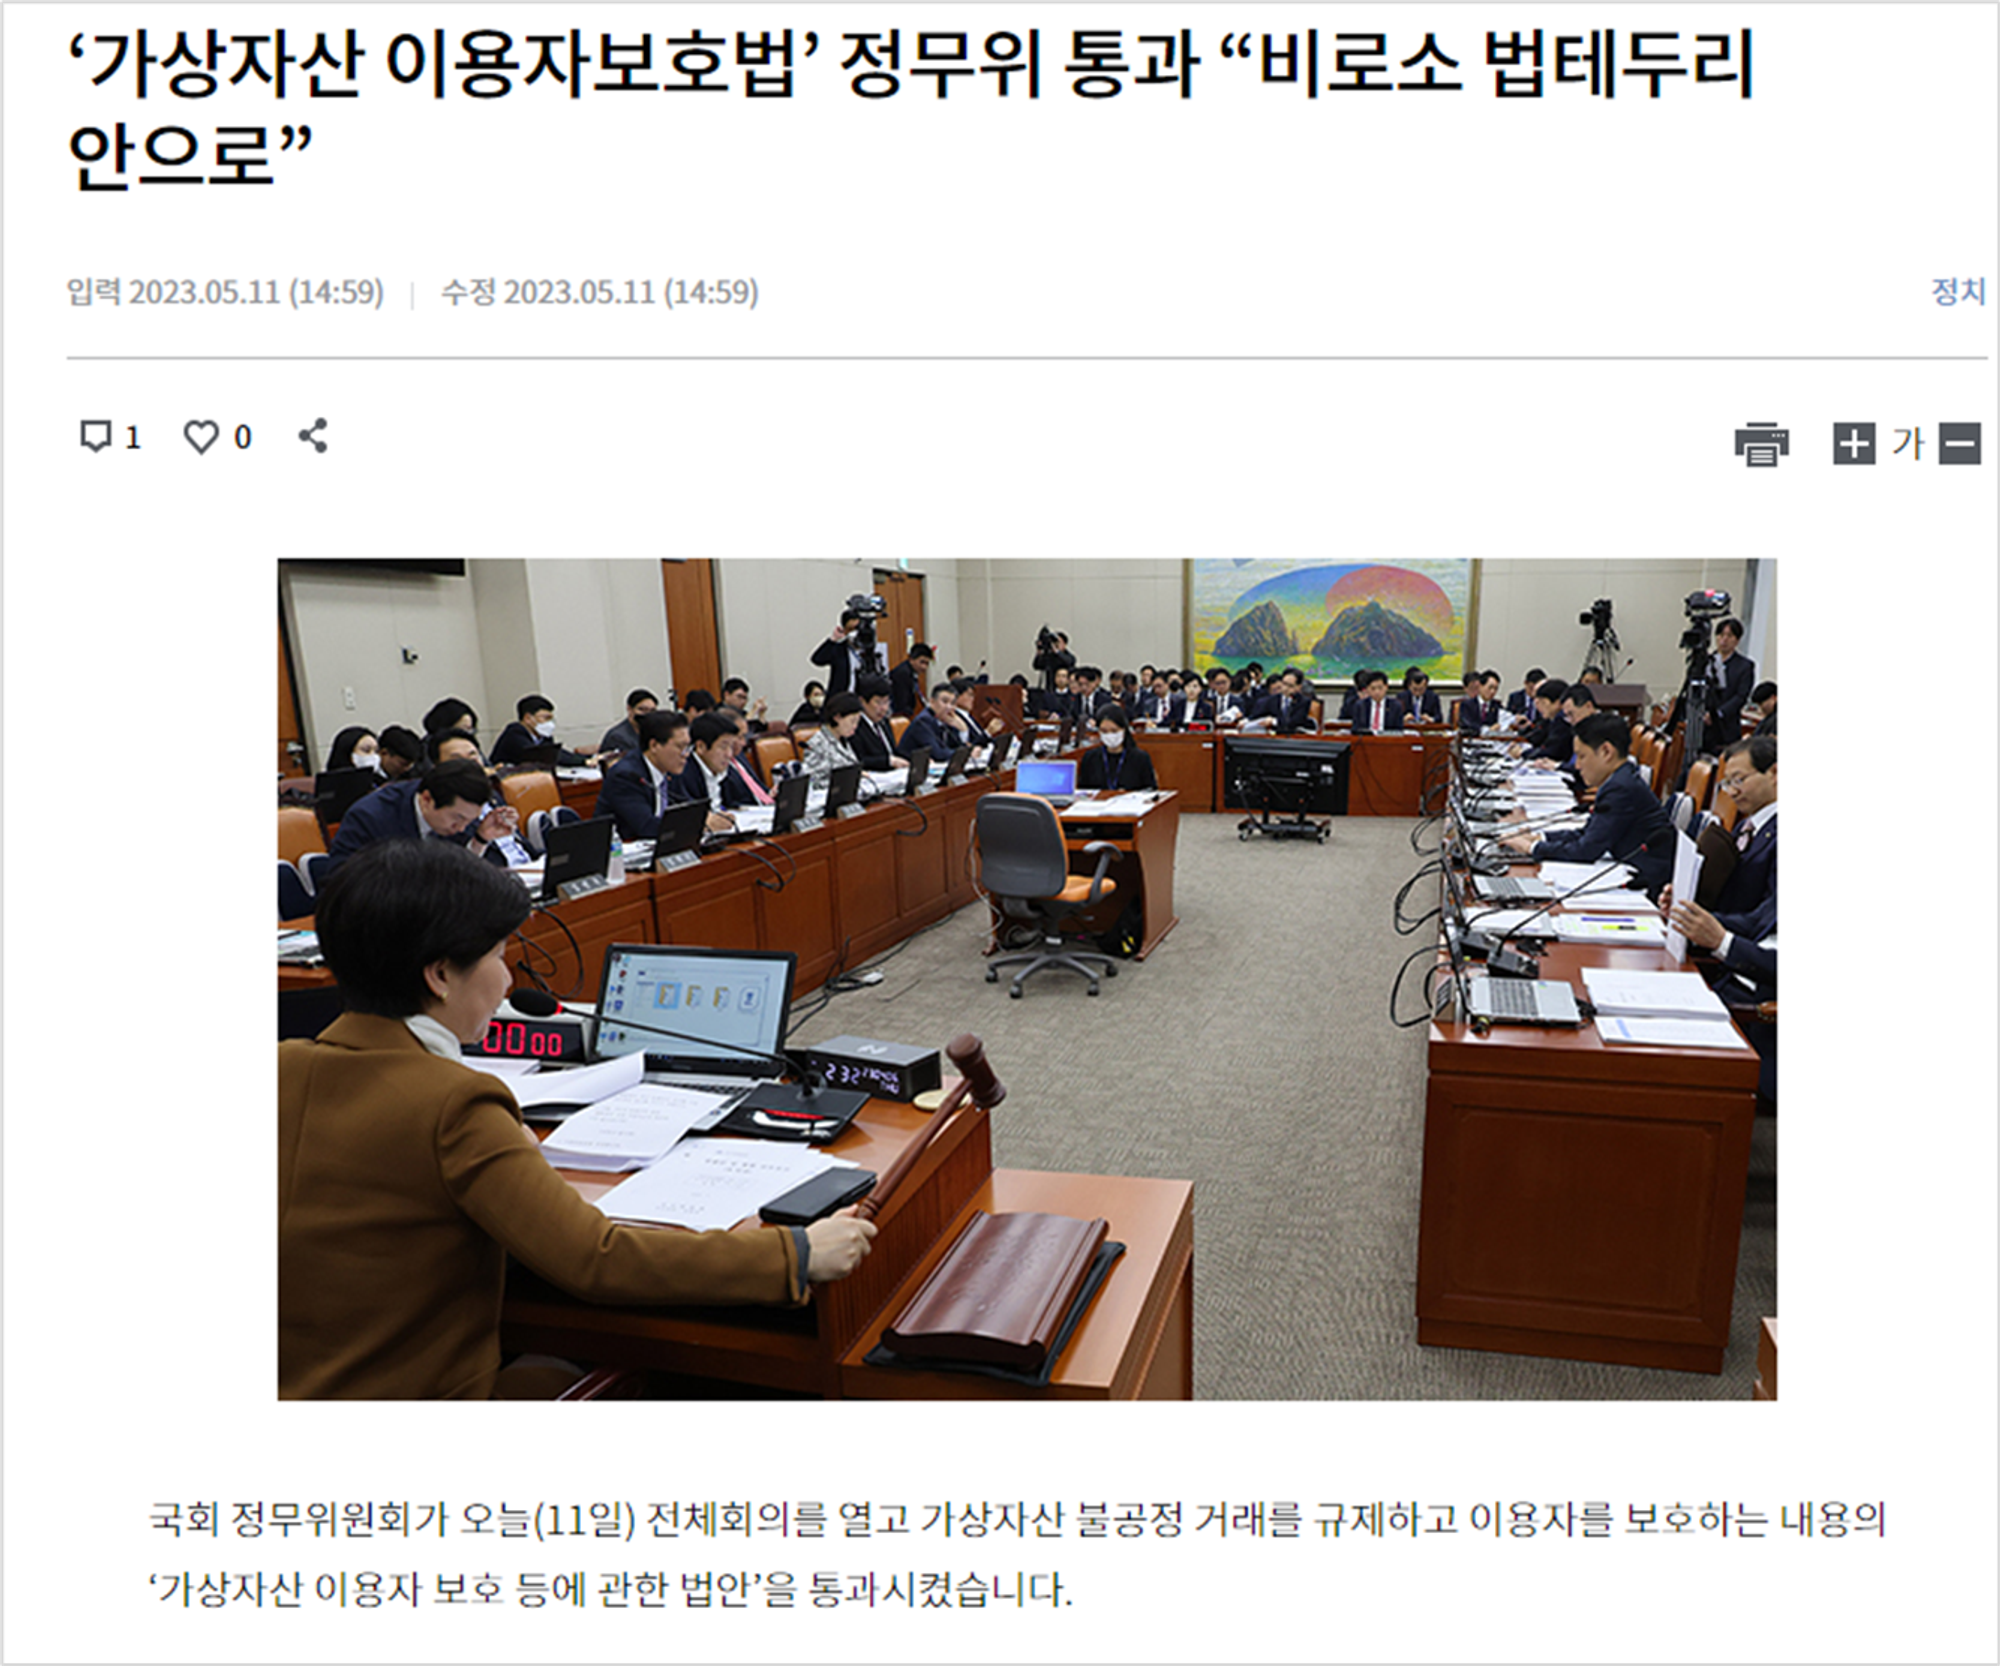 KBS News,  ‘가상자산 이용자보호법’ 정무위 통과 “비로소 법테두리 안으로” (kbs.co.kr)